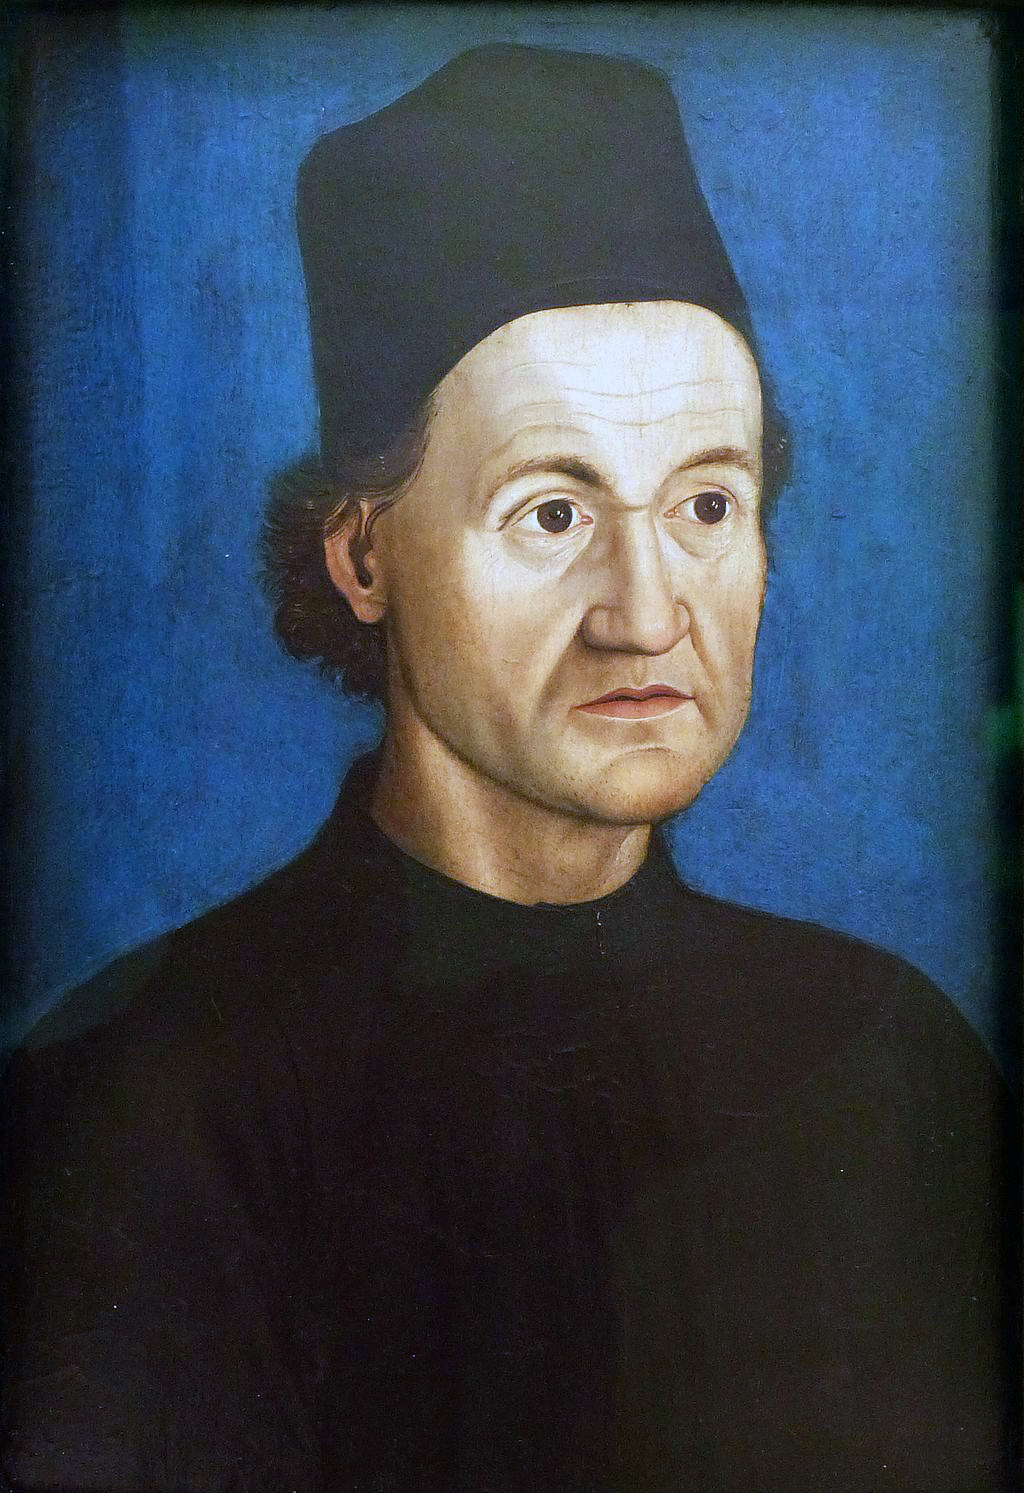 *1445: Johann Geyler von Kaysersberg, deutscher Prediger und Theologe